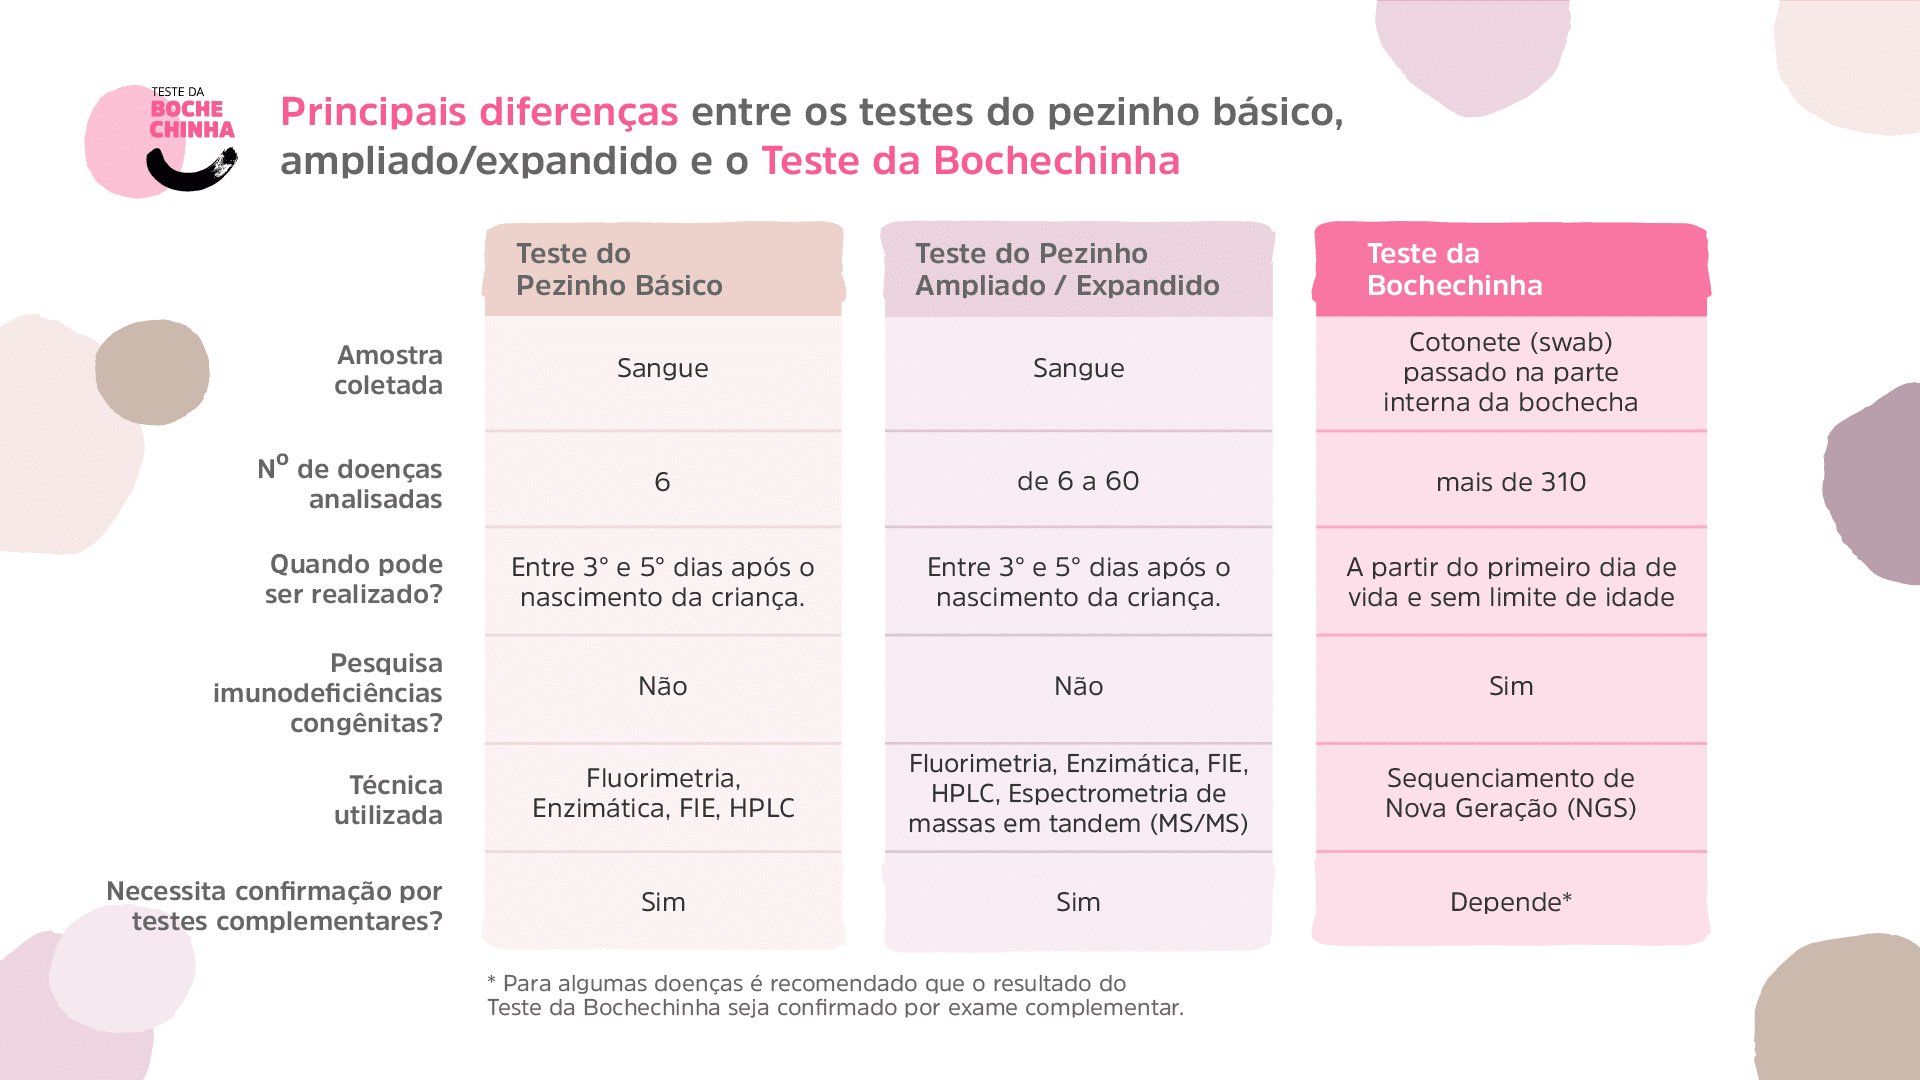 O Teste da Bochechinha, que analisa o DNA do bebê para identificar mais de 310 doenças, é o teste de triagem neonatal mais completo realizado no Brasil.